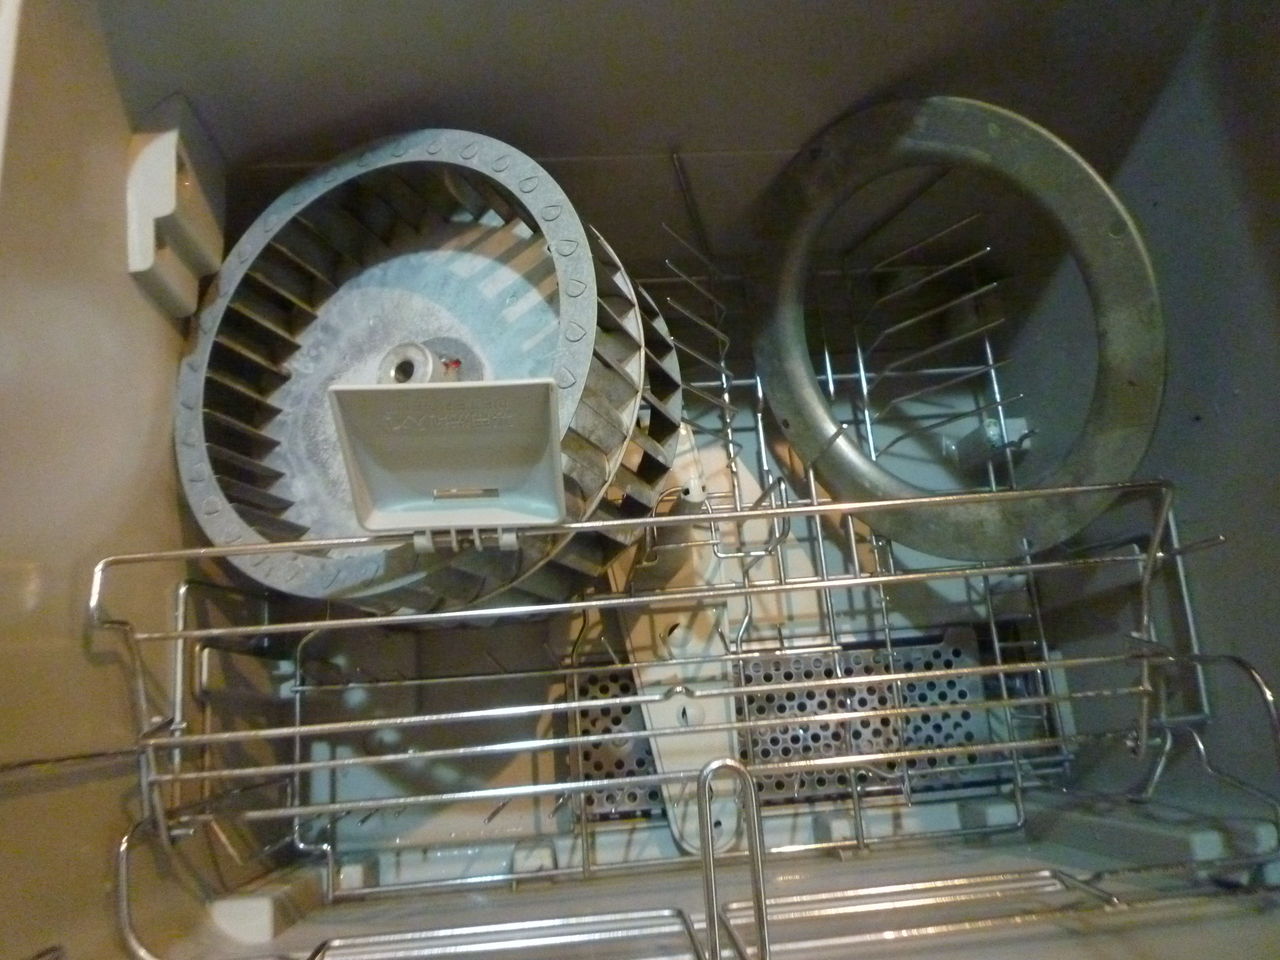 レンジフードのお掃除 Part2 シロッコファンを食洗器に入れてみた 主婦 ざっぱ の めざせ スッキリ空間